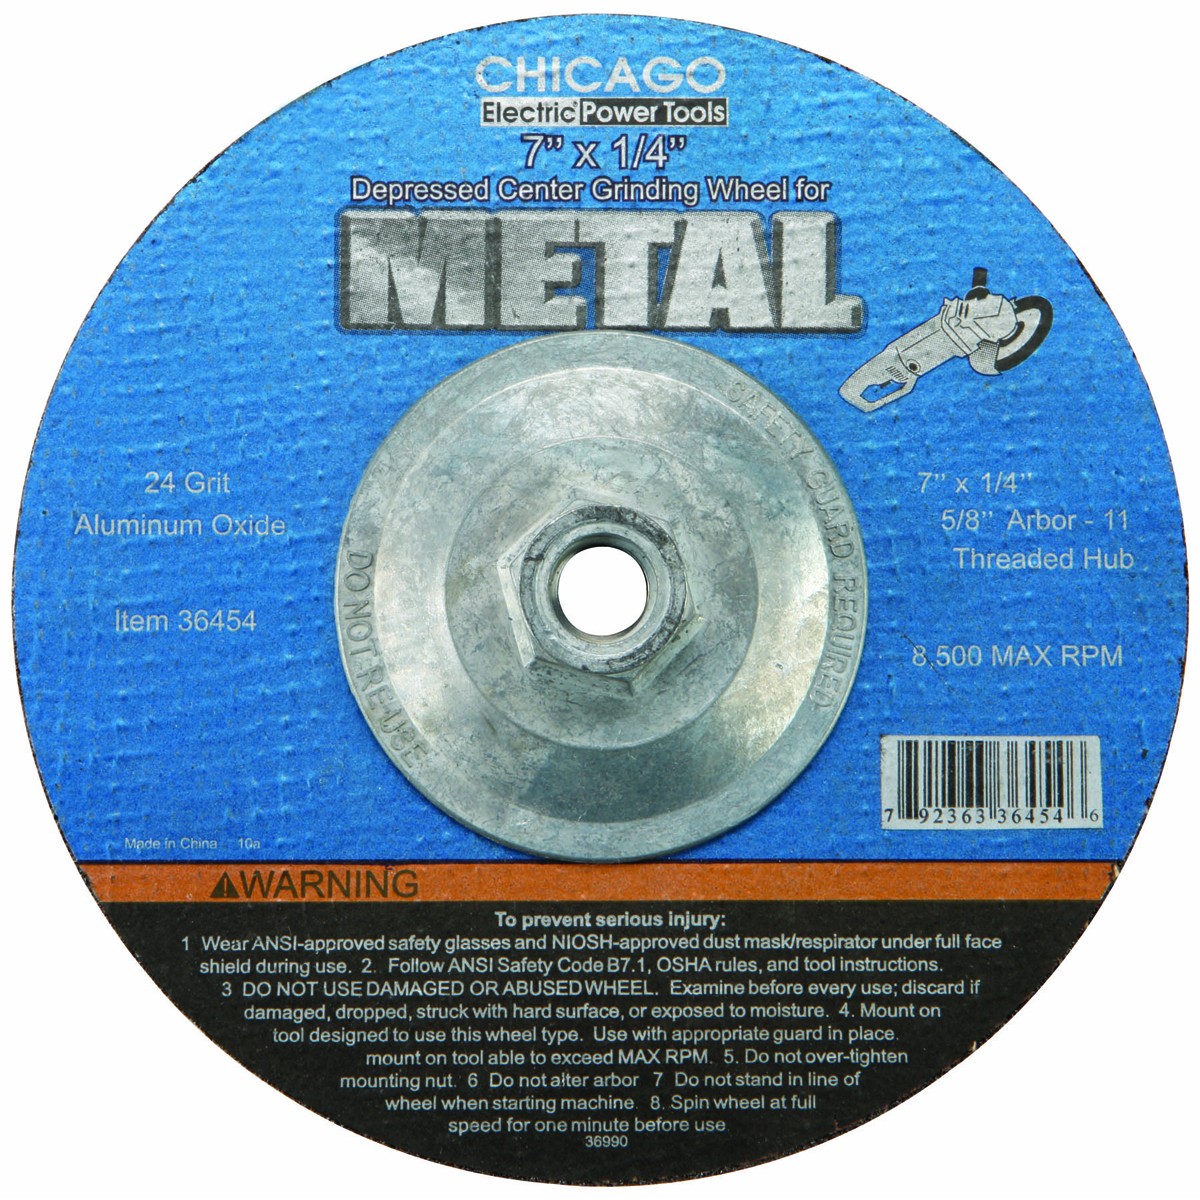 WARRIOR 7 In. 24 Grit Metal Grinding Wheel – Item 36454 / 67508